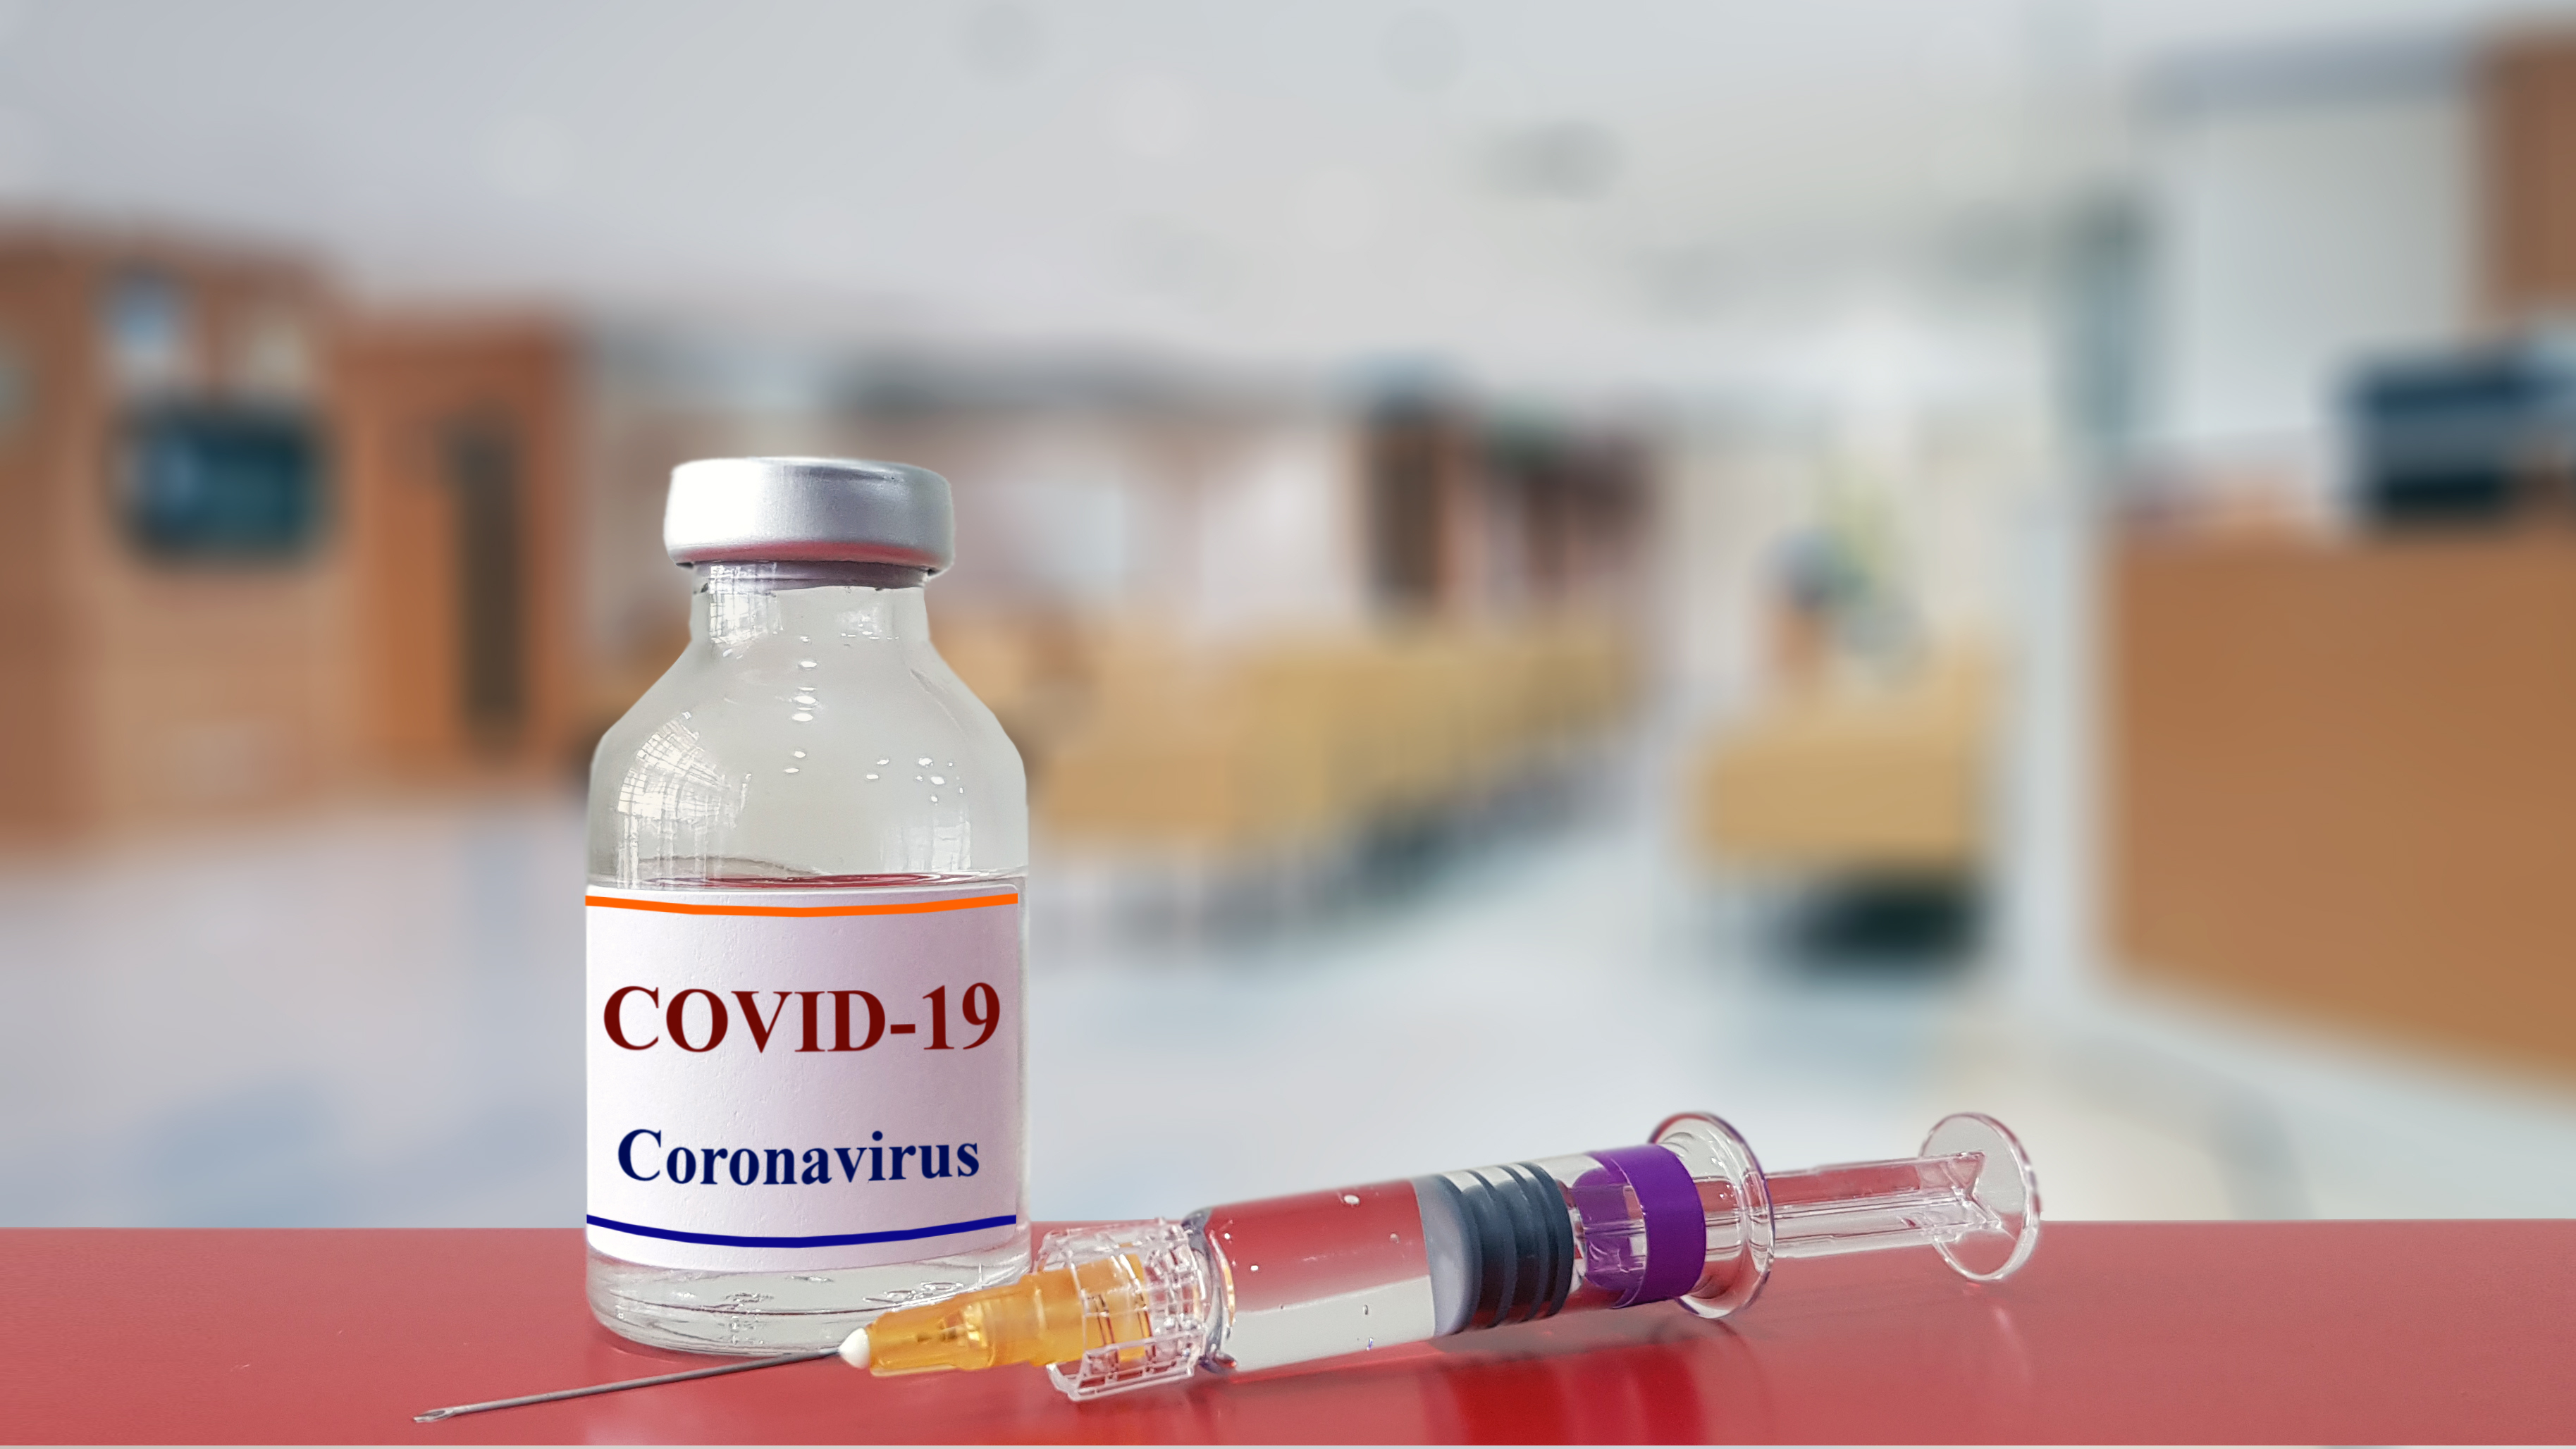 Тестирование населения, изоляция больных и вакцинация положат конец пандемии COVID-19